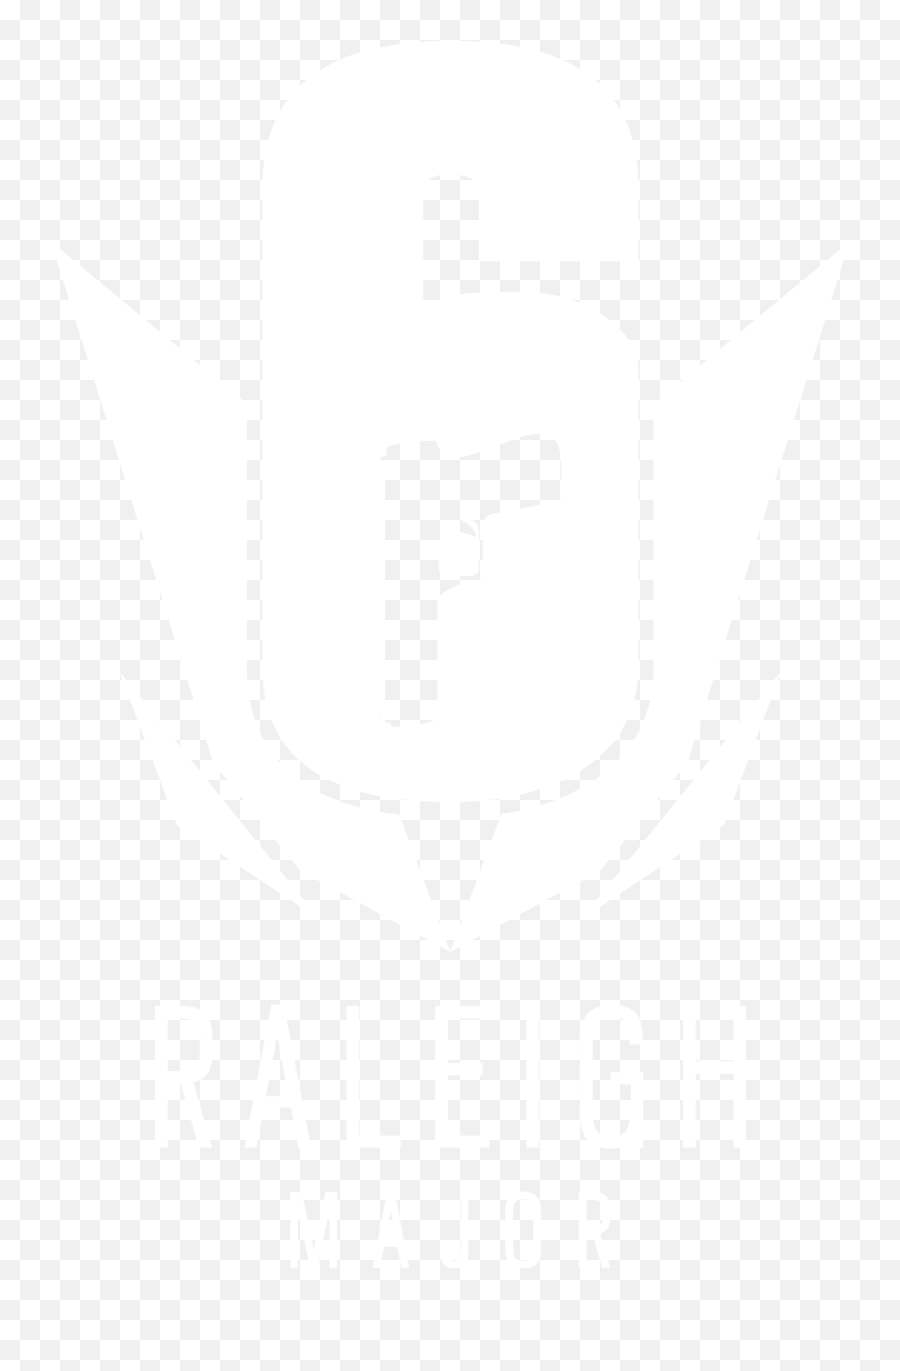 2021 - Rainbow Six Siege Major Logo Emoji,Rainbow Six Siege Logo